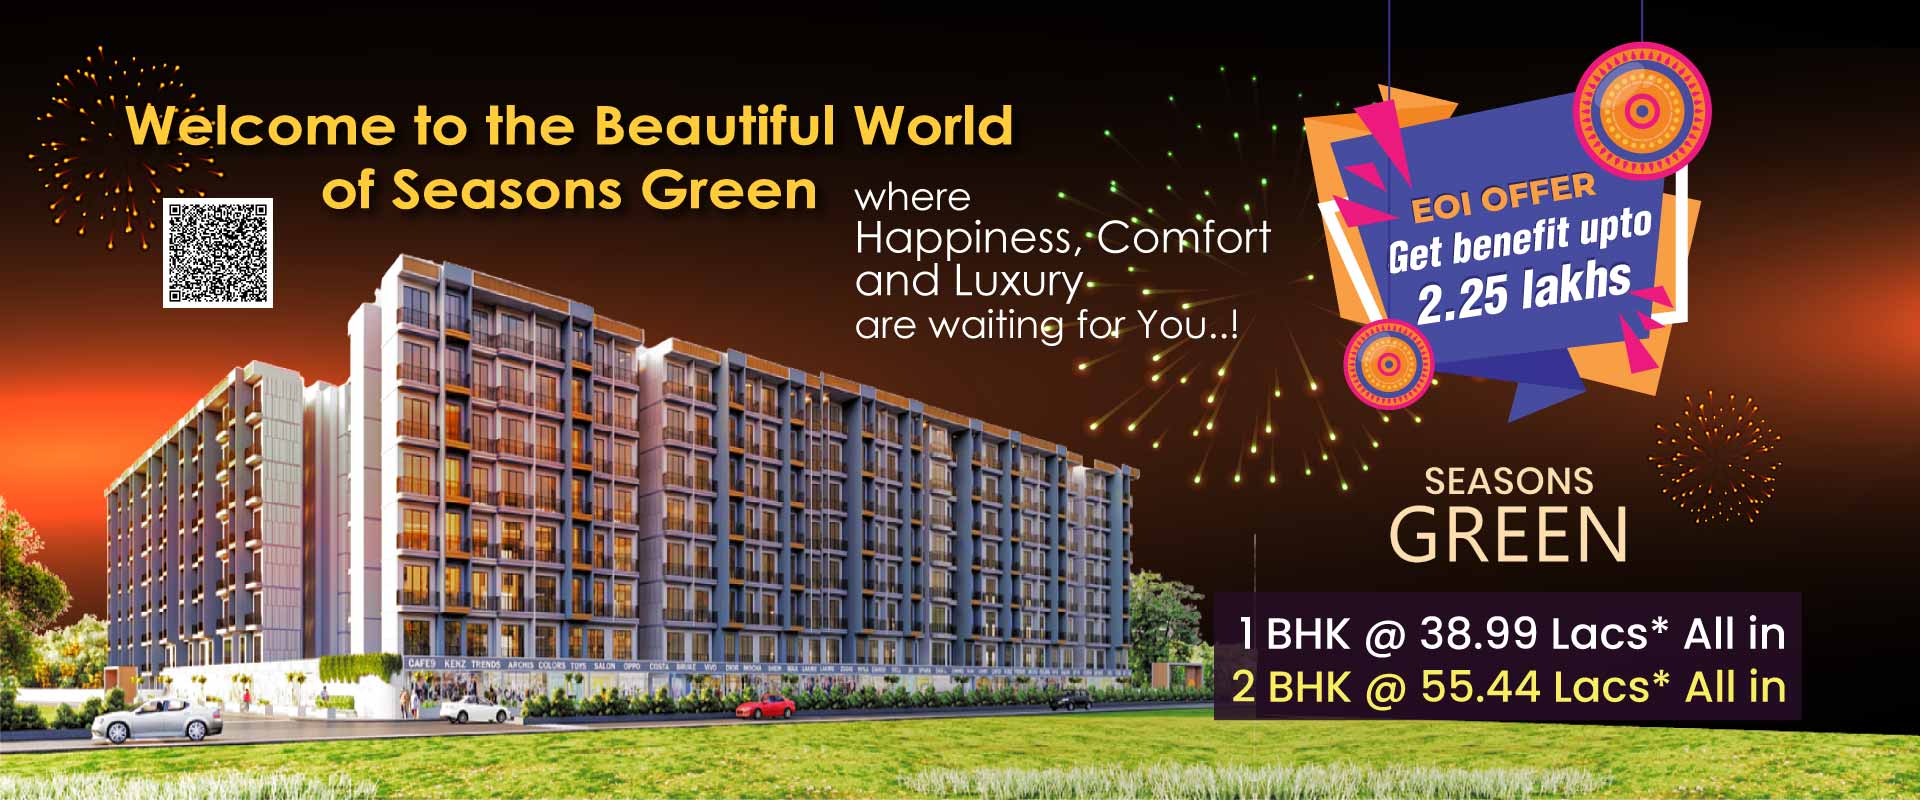 2 bhk price in kalyan - Seasons Green